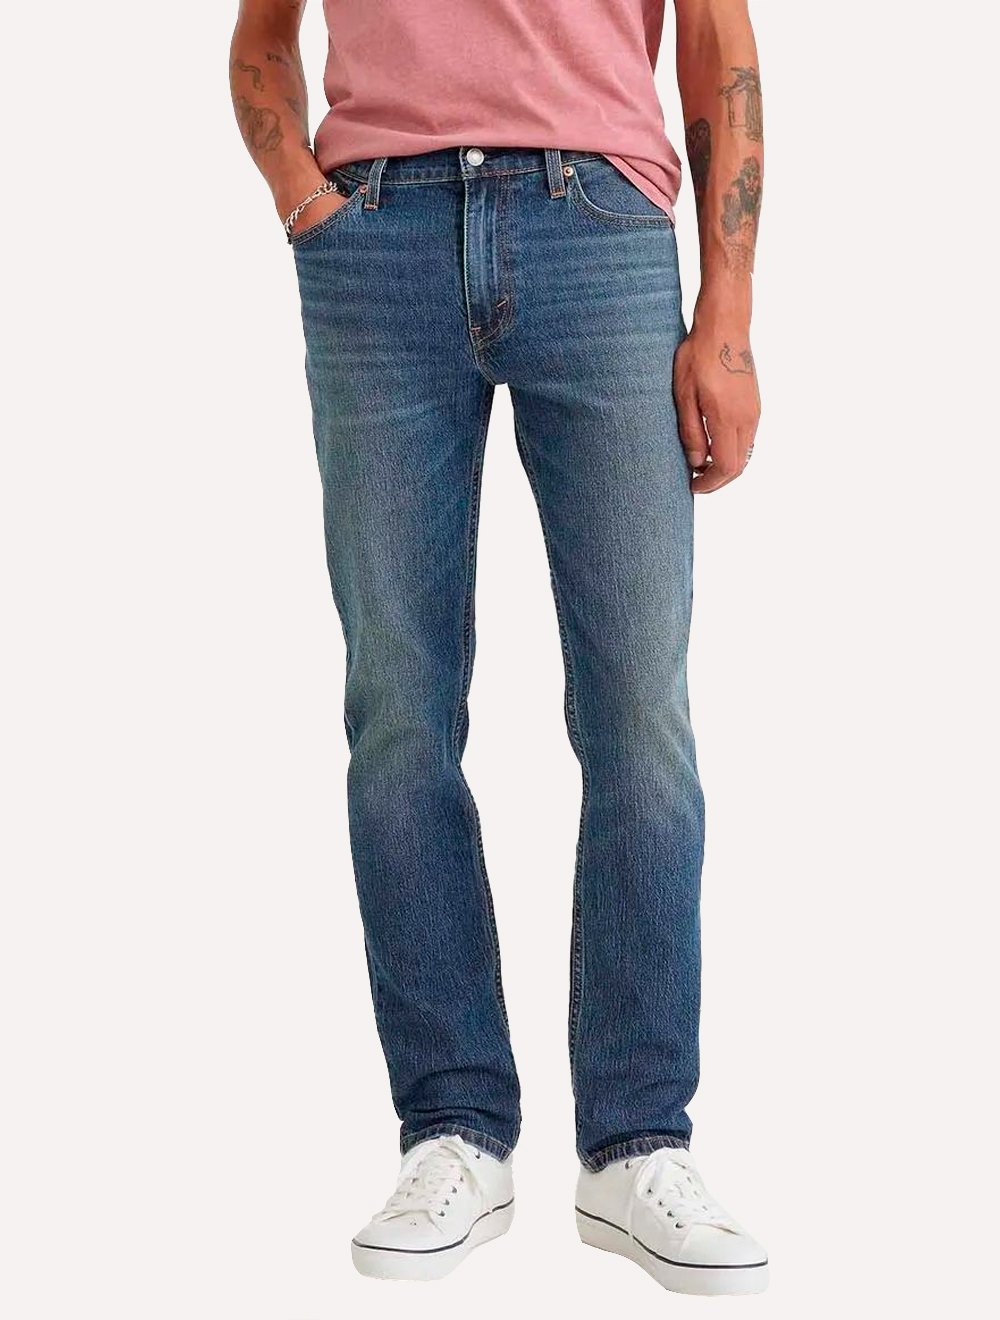 Calça Levis Jeans Masculina 511 Slim Stretch Wear Matte Blue Médio